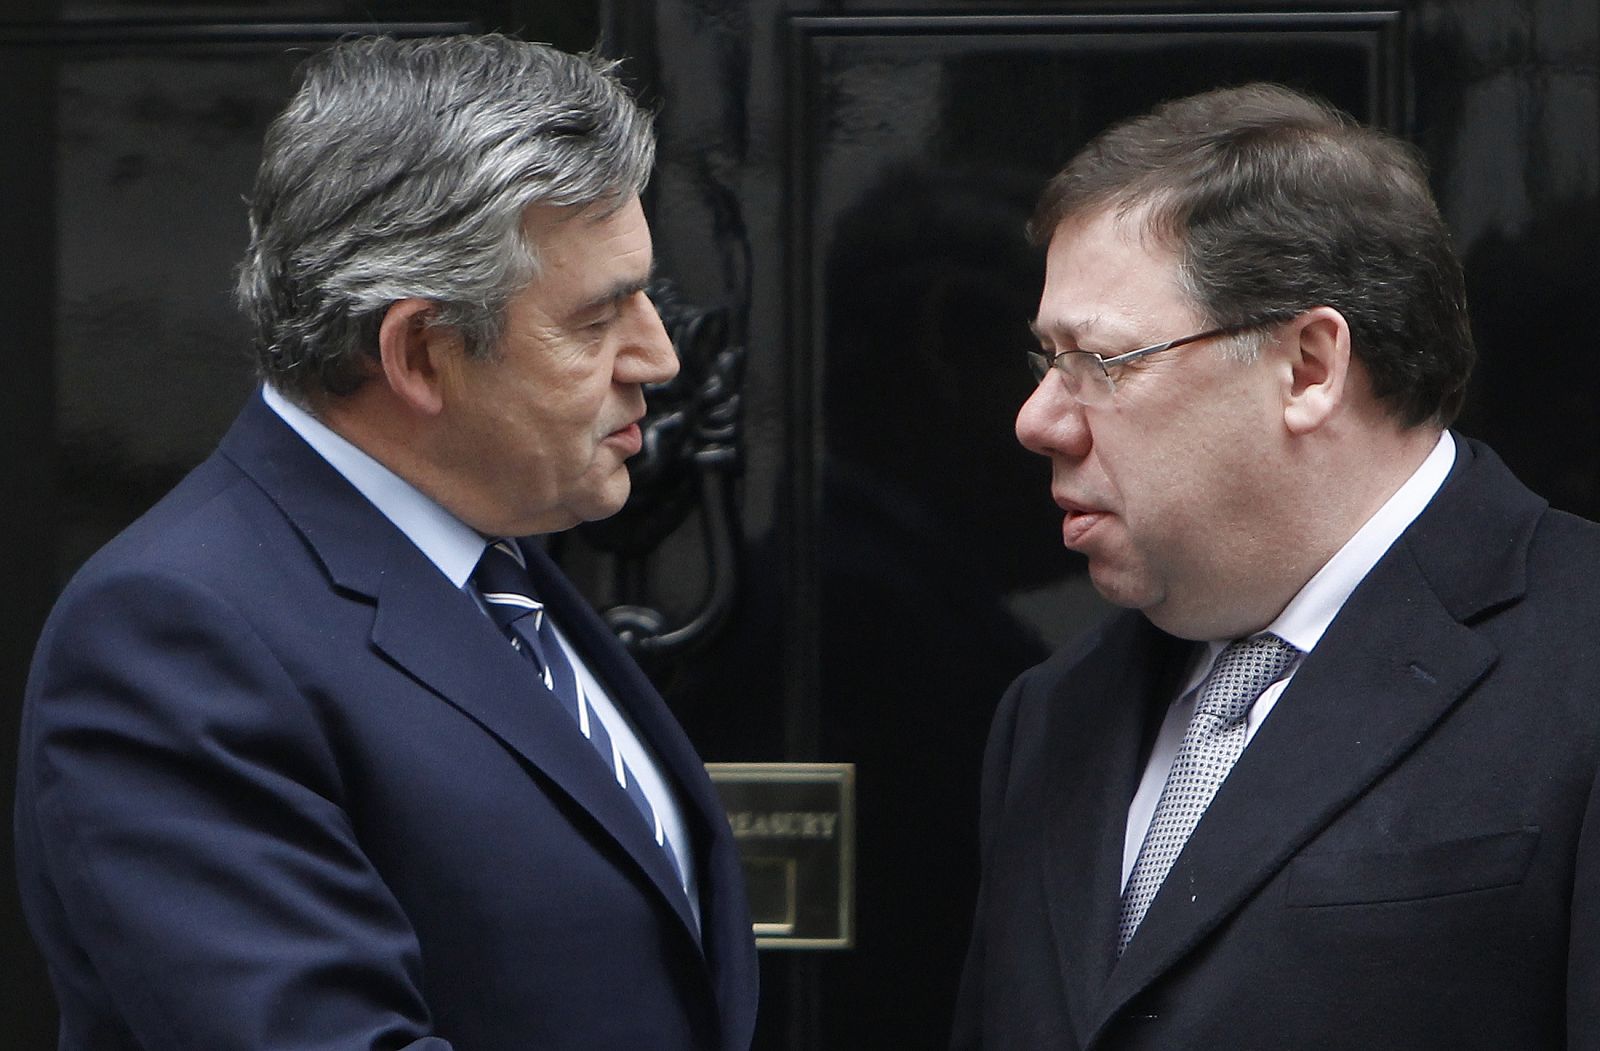 El primer ministro británico, Gordon Brown, saluda a su homólogo irlandés, Taoiseach Cowen a las puertas de Downing Street.